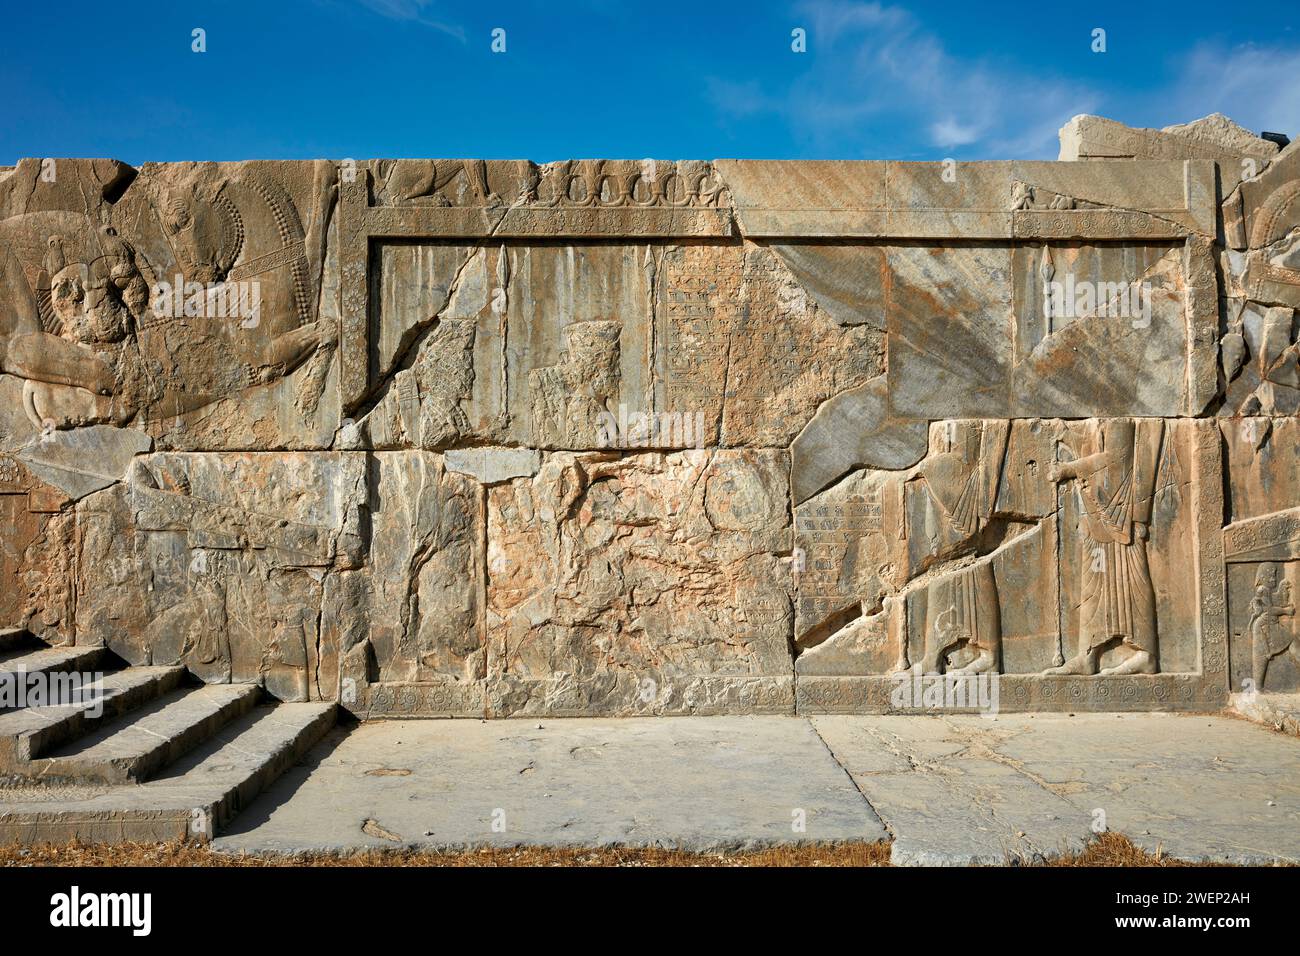 Escalier d'un palais en ruine orné de reliefs complexes à Persépolis, capitale de l'Empire achéménide (550–330 av. J.-C.), Iran. Banque D'Images